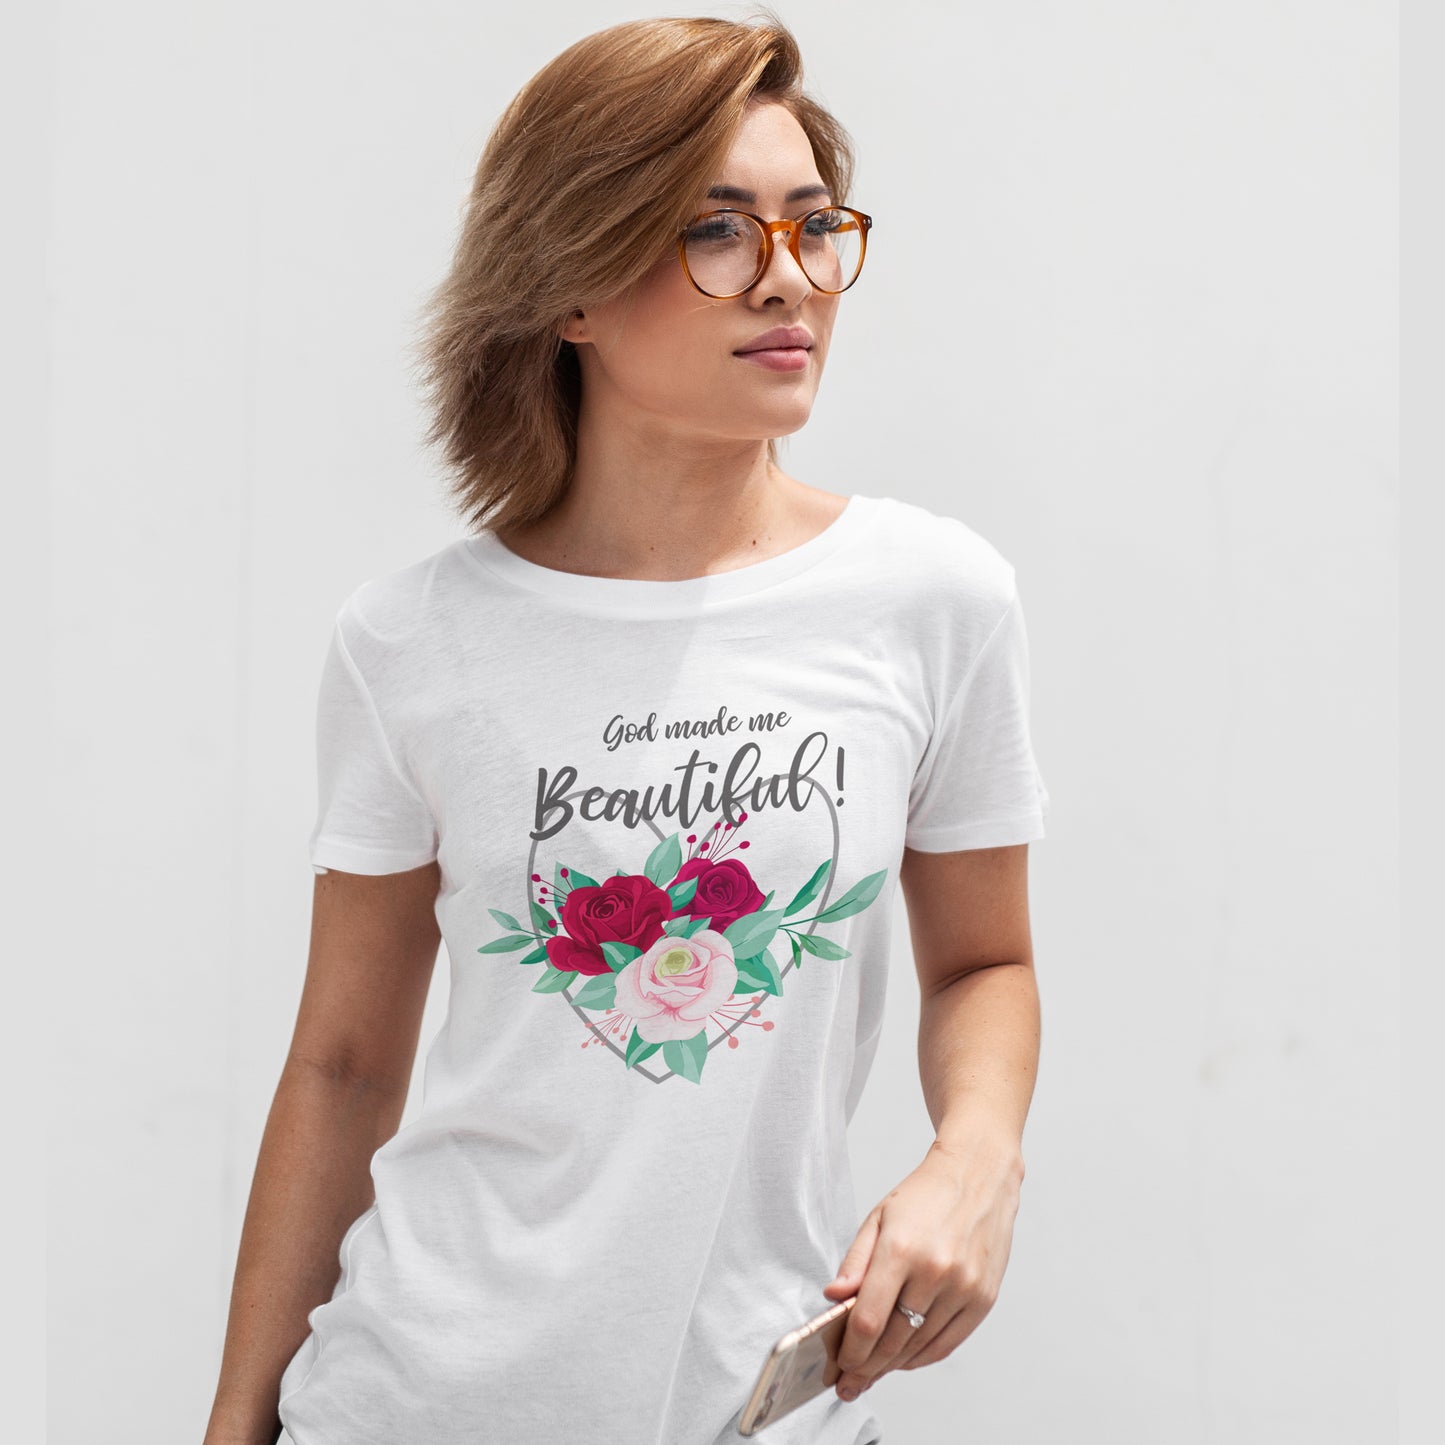 God made me Beautiful - Women Tshirt